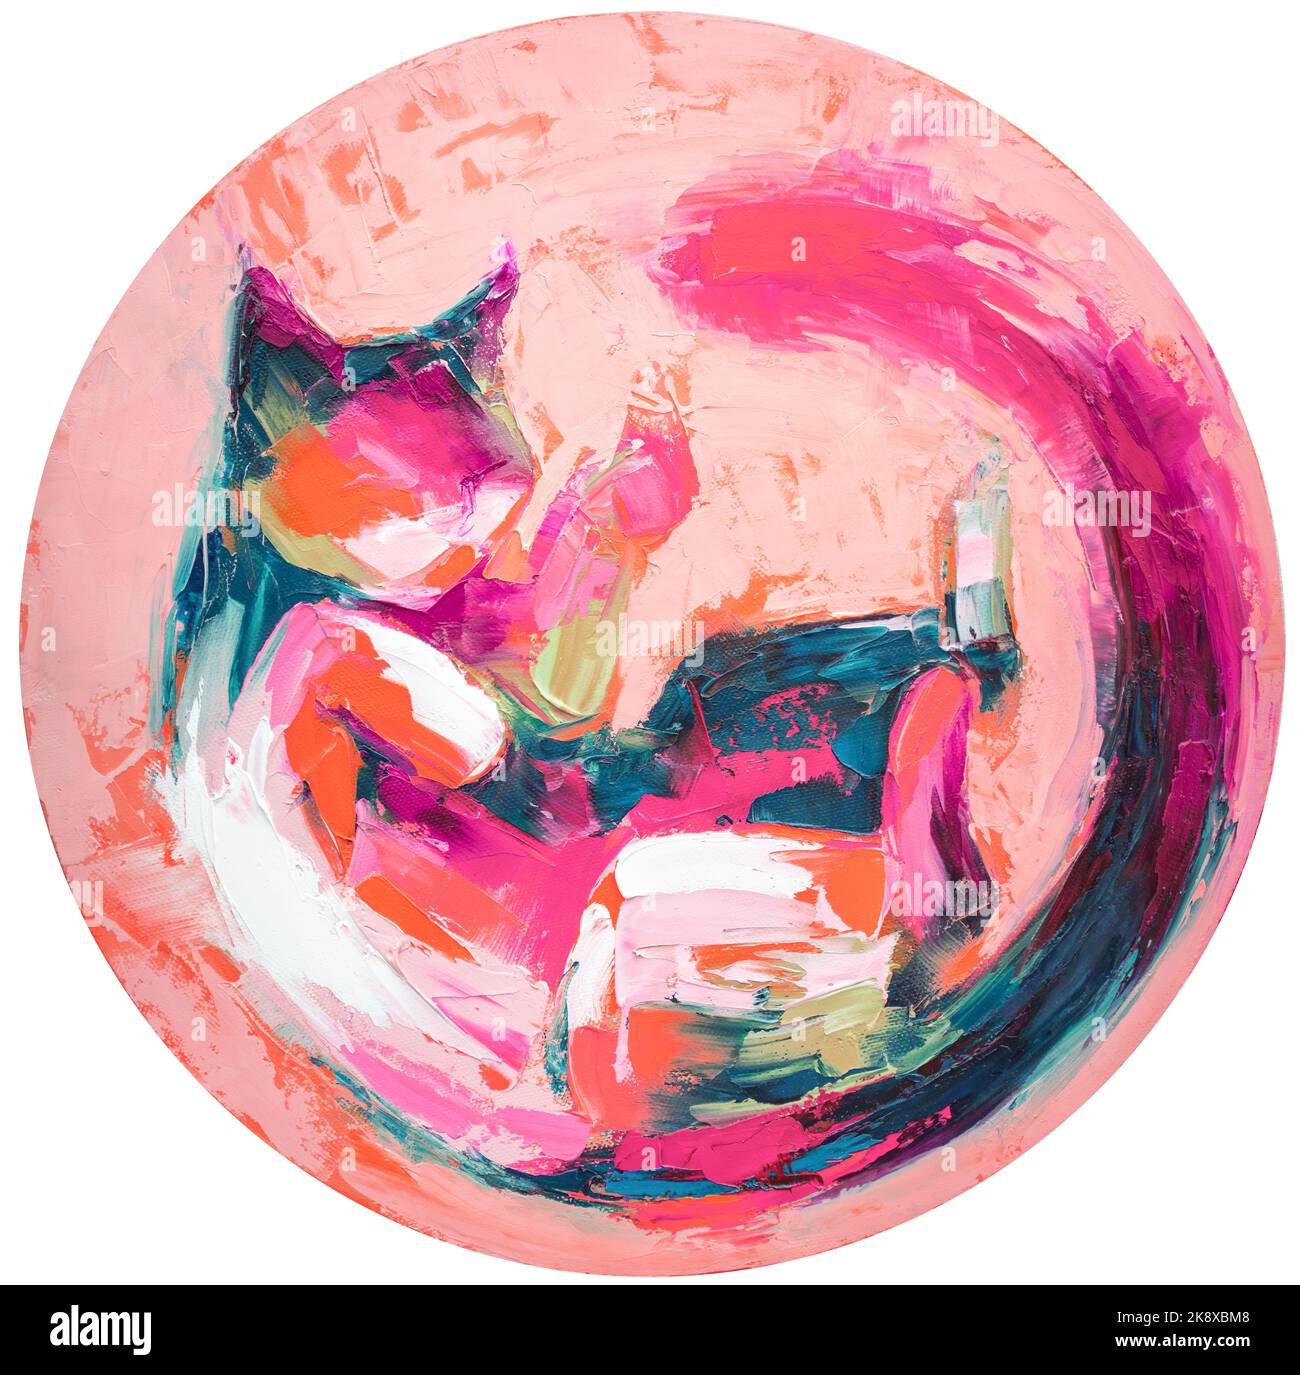 L'image de l'huile d'un chat s'est enroulée vers le haut de la peinture dans des tons multicolores. Peinture abstraite conceptuelle. Gros plan huile de peinture et couteau à palette sur toile. Banque D'Images